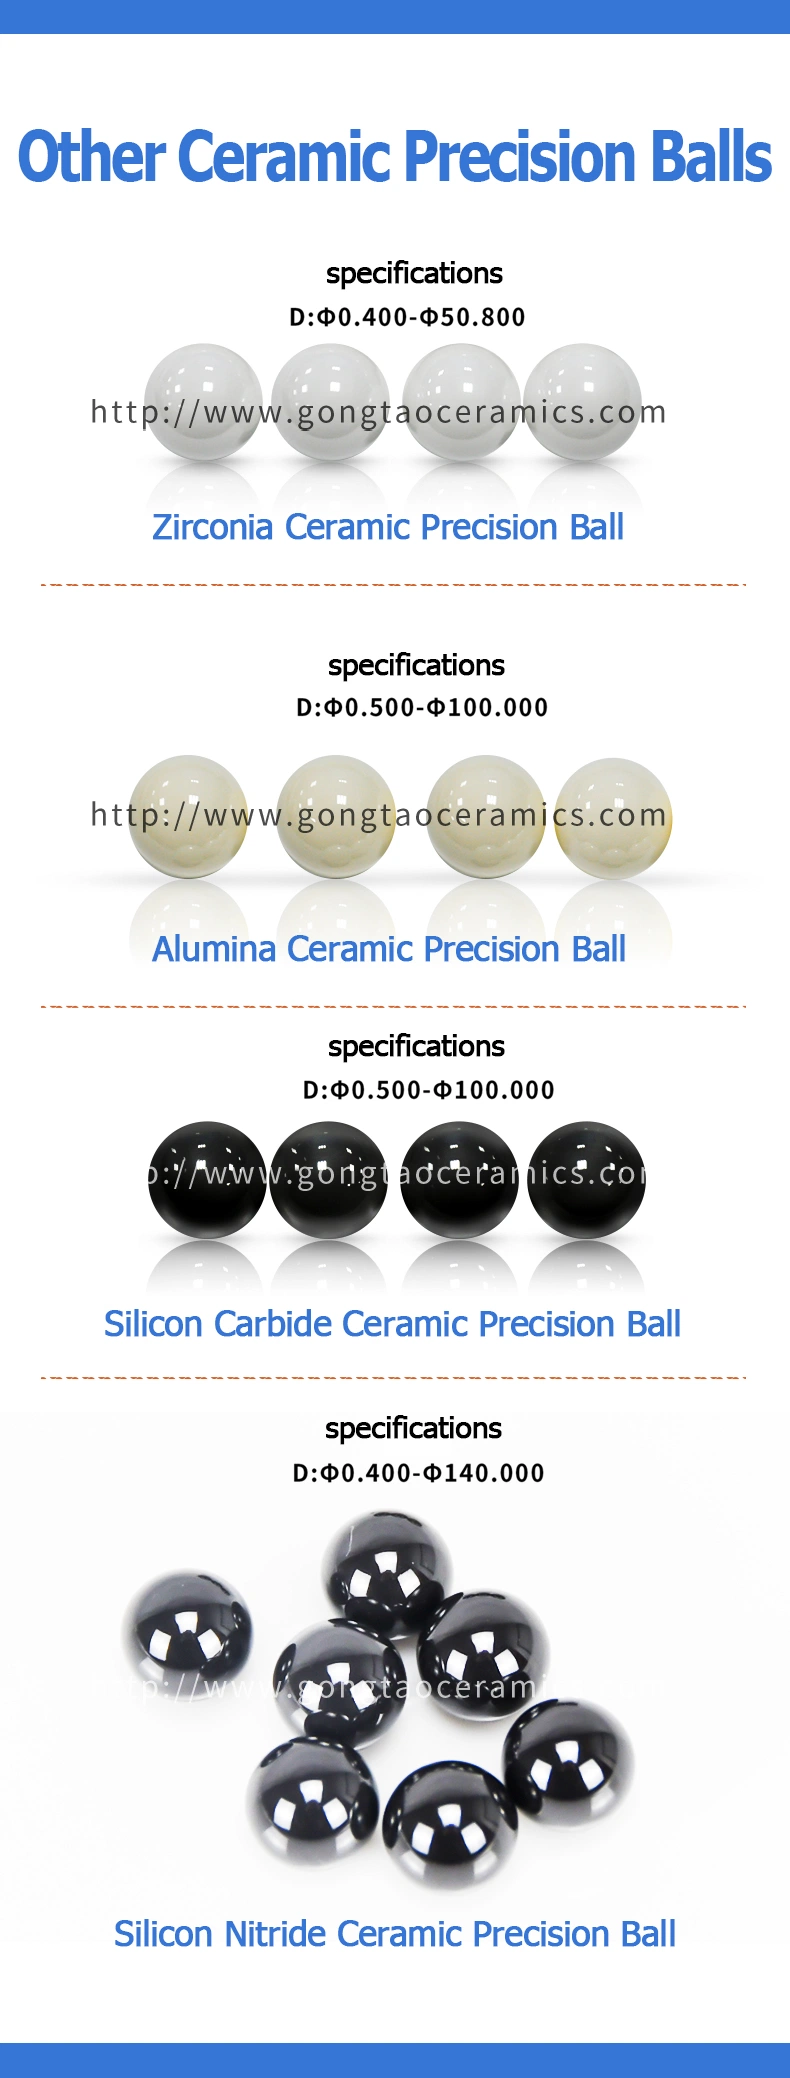 Silicon Nitride Ceramic Precision Ball